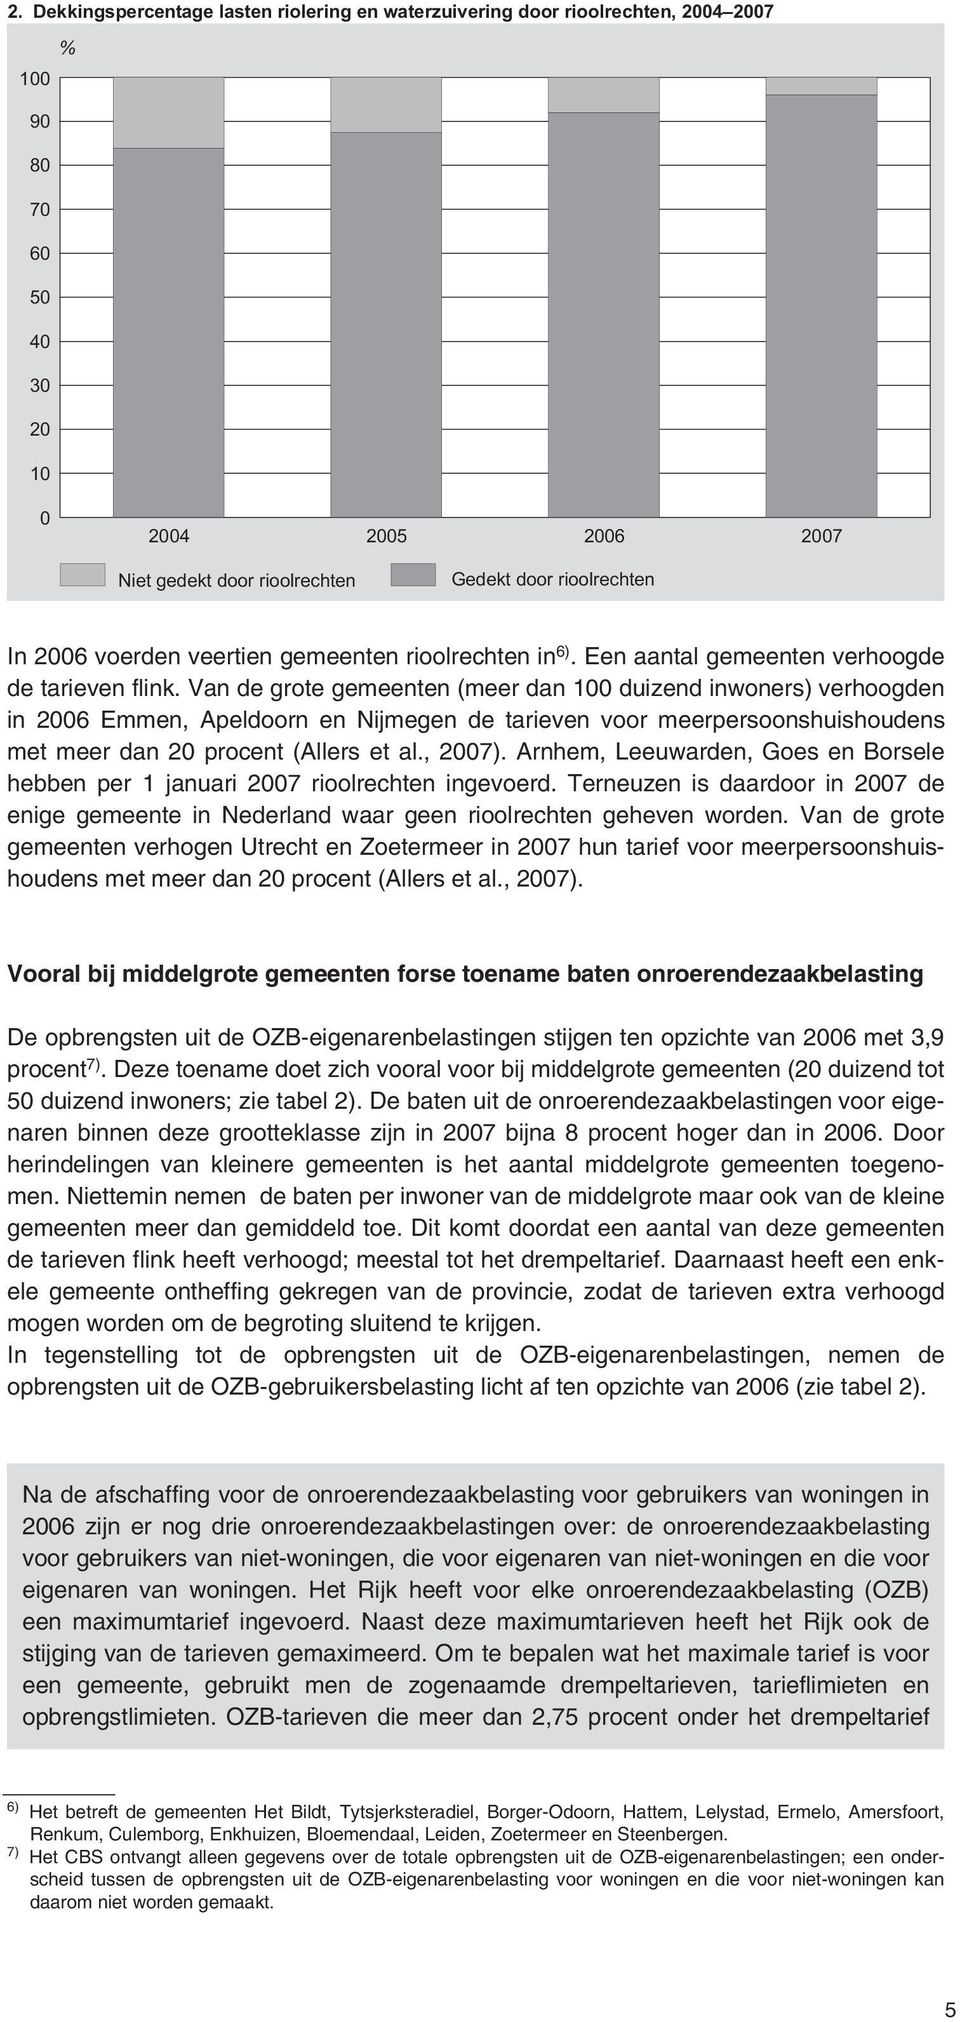 Van de grote gemeenten (meer dan 100 duizend inwoners) verhoogden in 2006 Emmen, Apeldoorn en Nijmegen de tarieven voor meerpersoonshuishoudens met meer dan 20 procent (Allers et al., 2007).